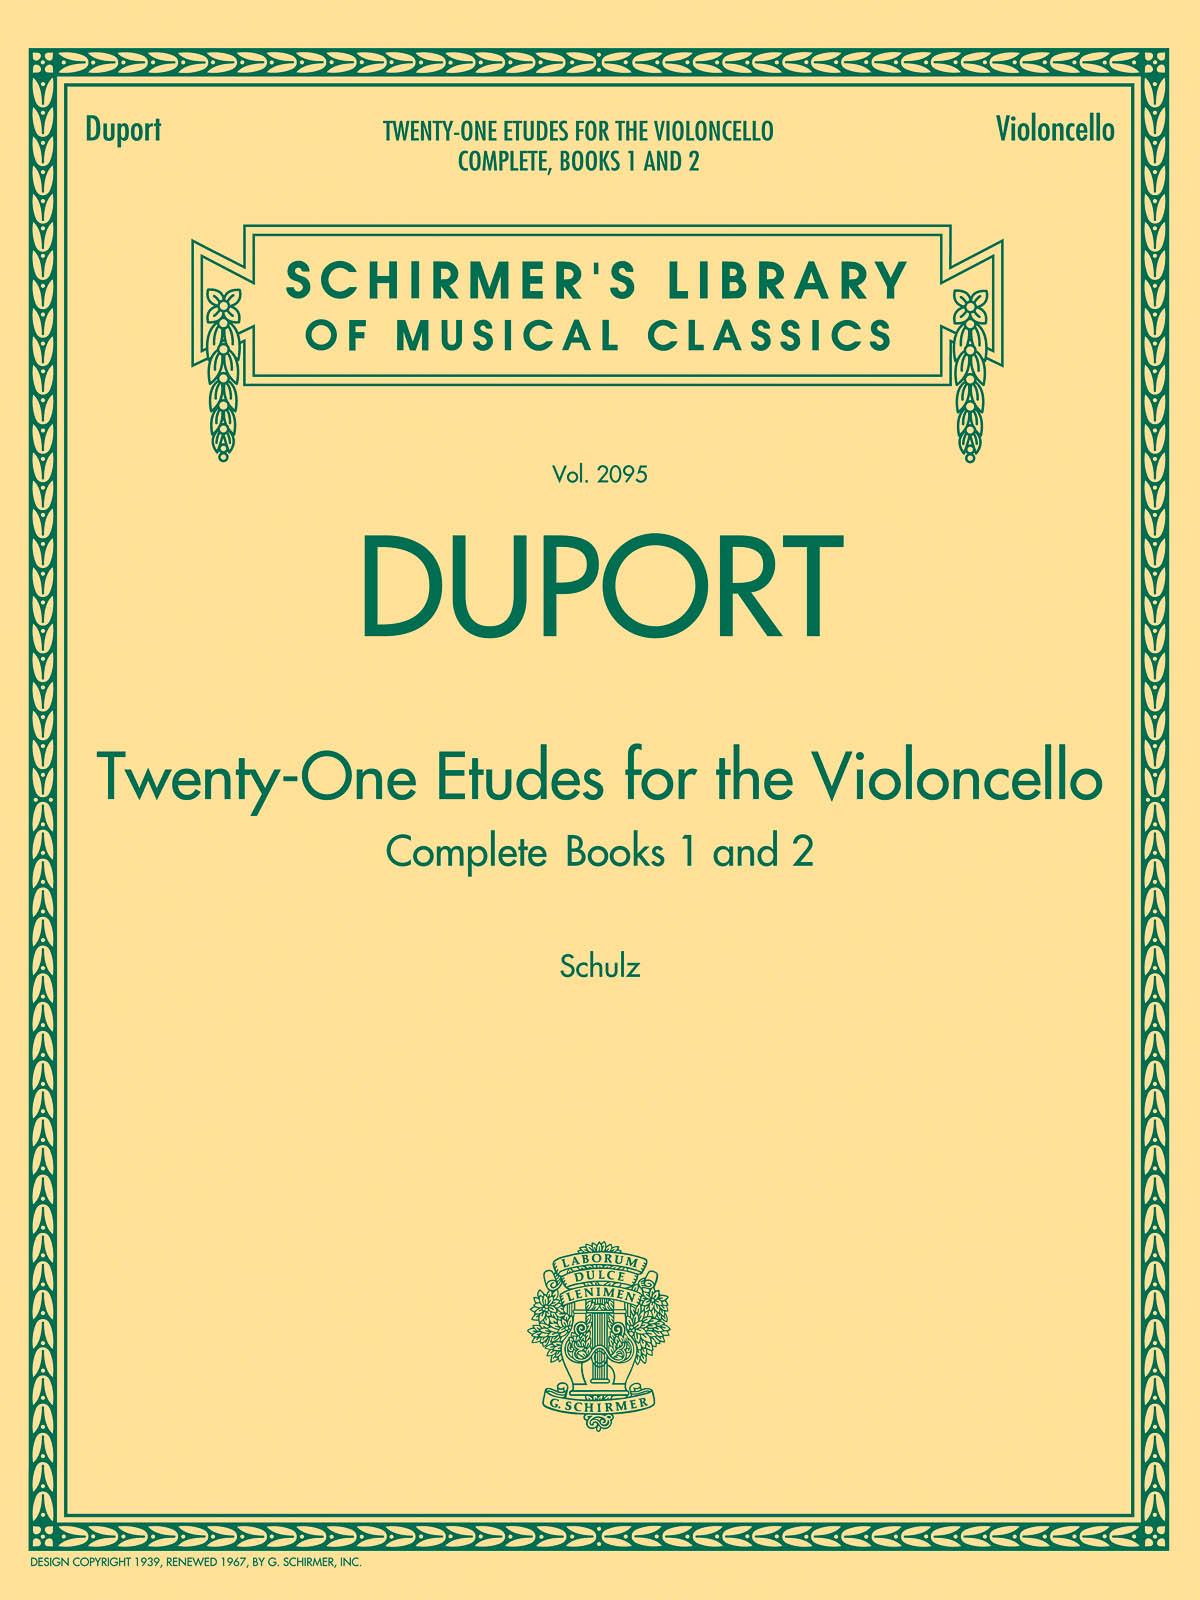 21 Etudes For Cello - Complete Books 1 & 2 - pro violoncello